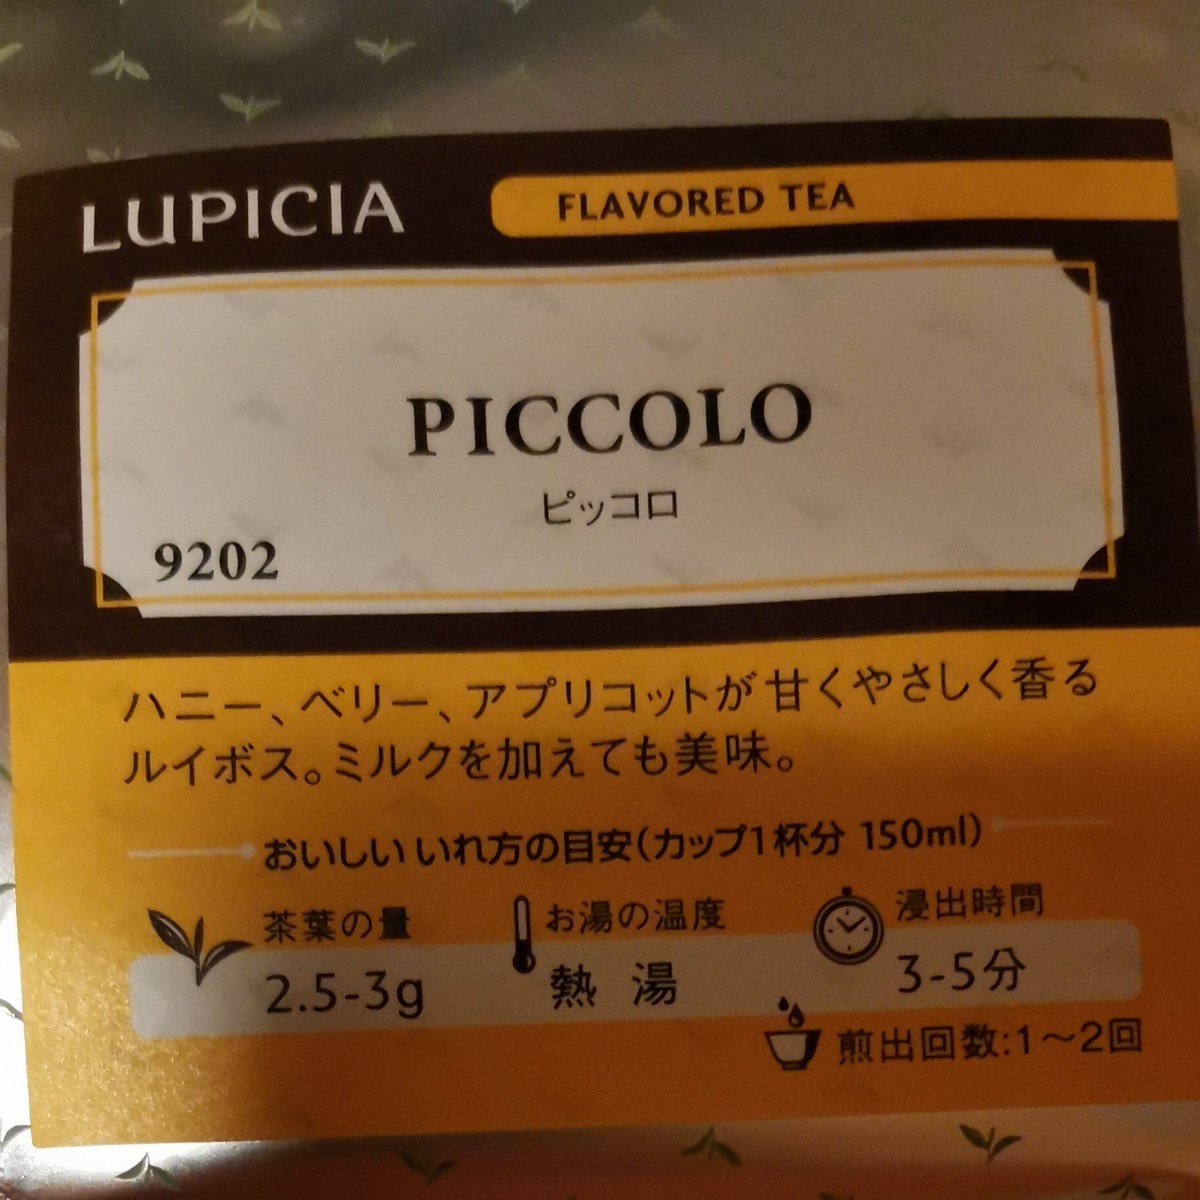 ルピシア デカフェ 4種類セット カフェイン気にする人にオススメの紅茶 ルイボスティー 美味しいフレーバーティー  LUPICIA